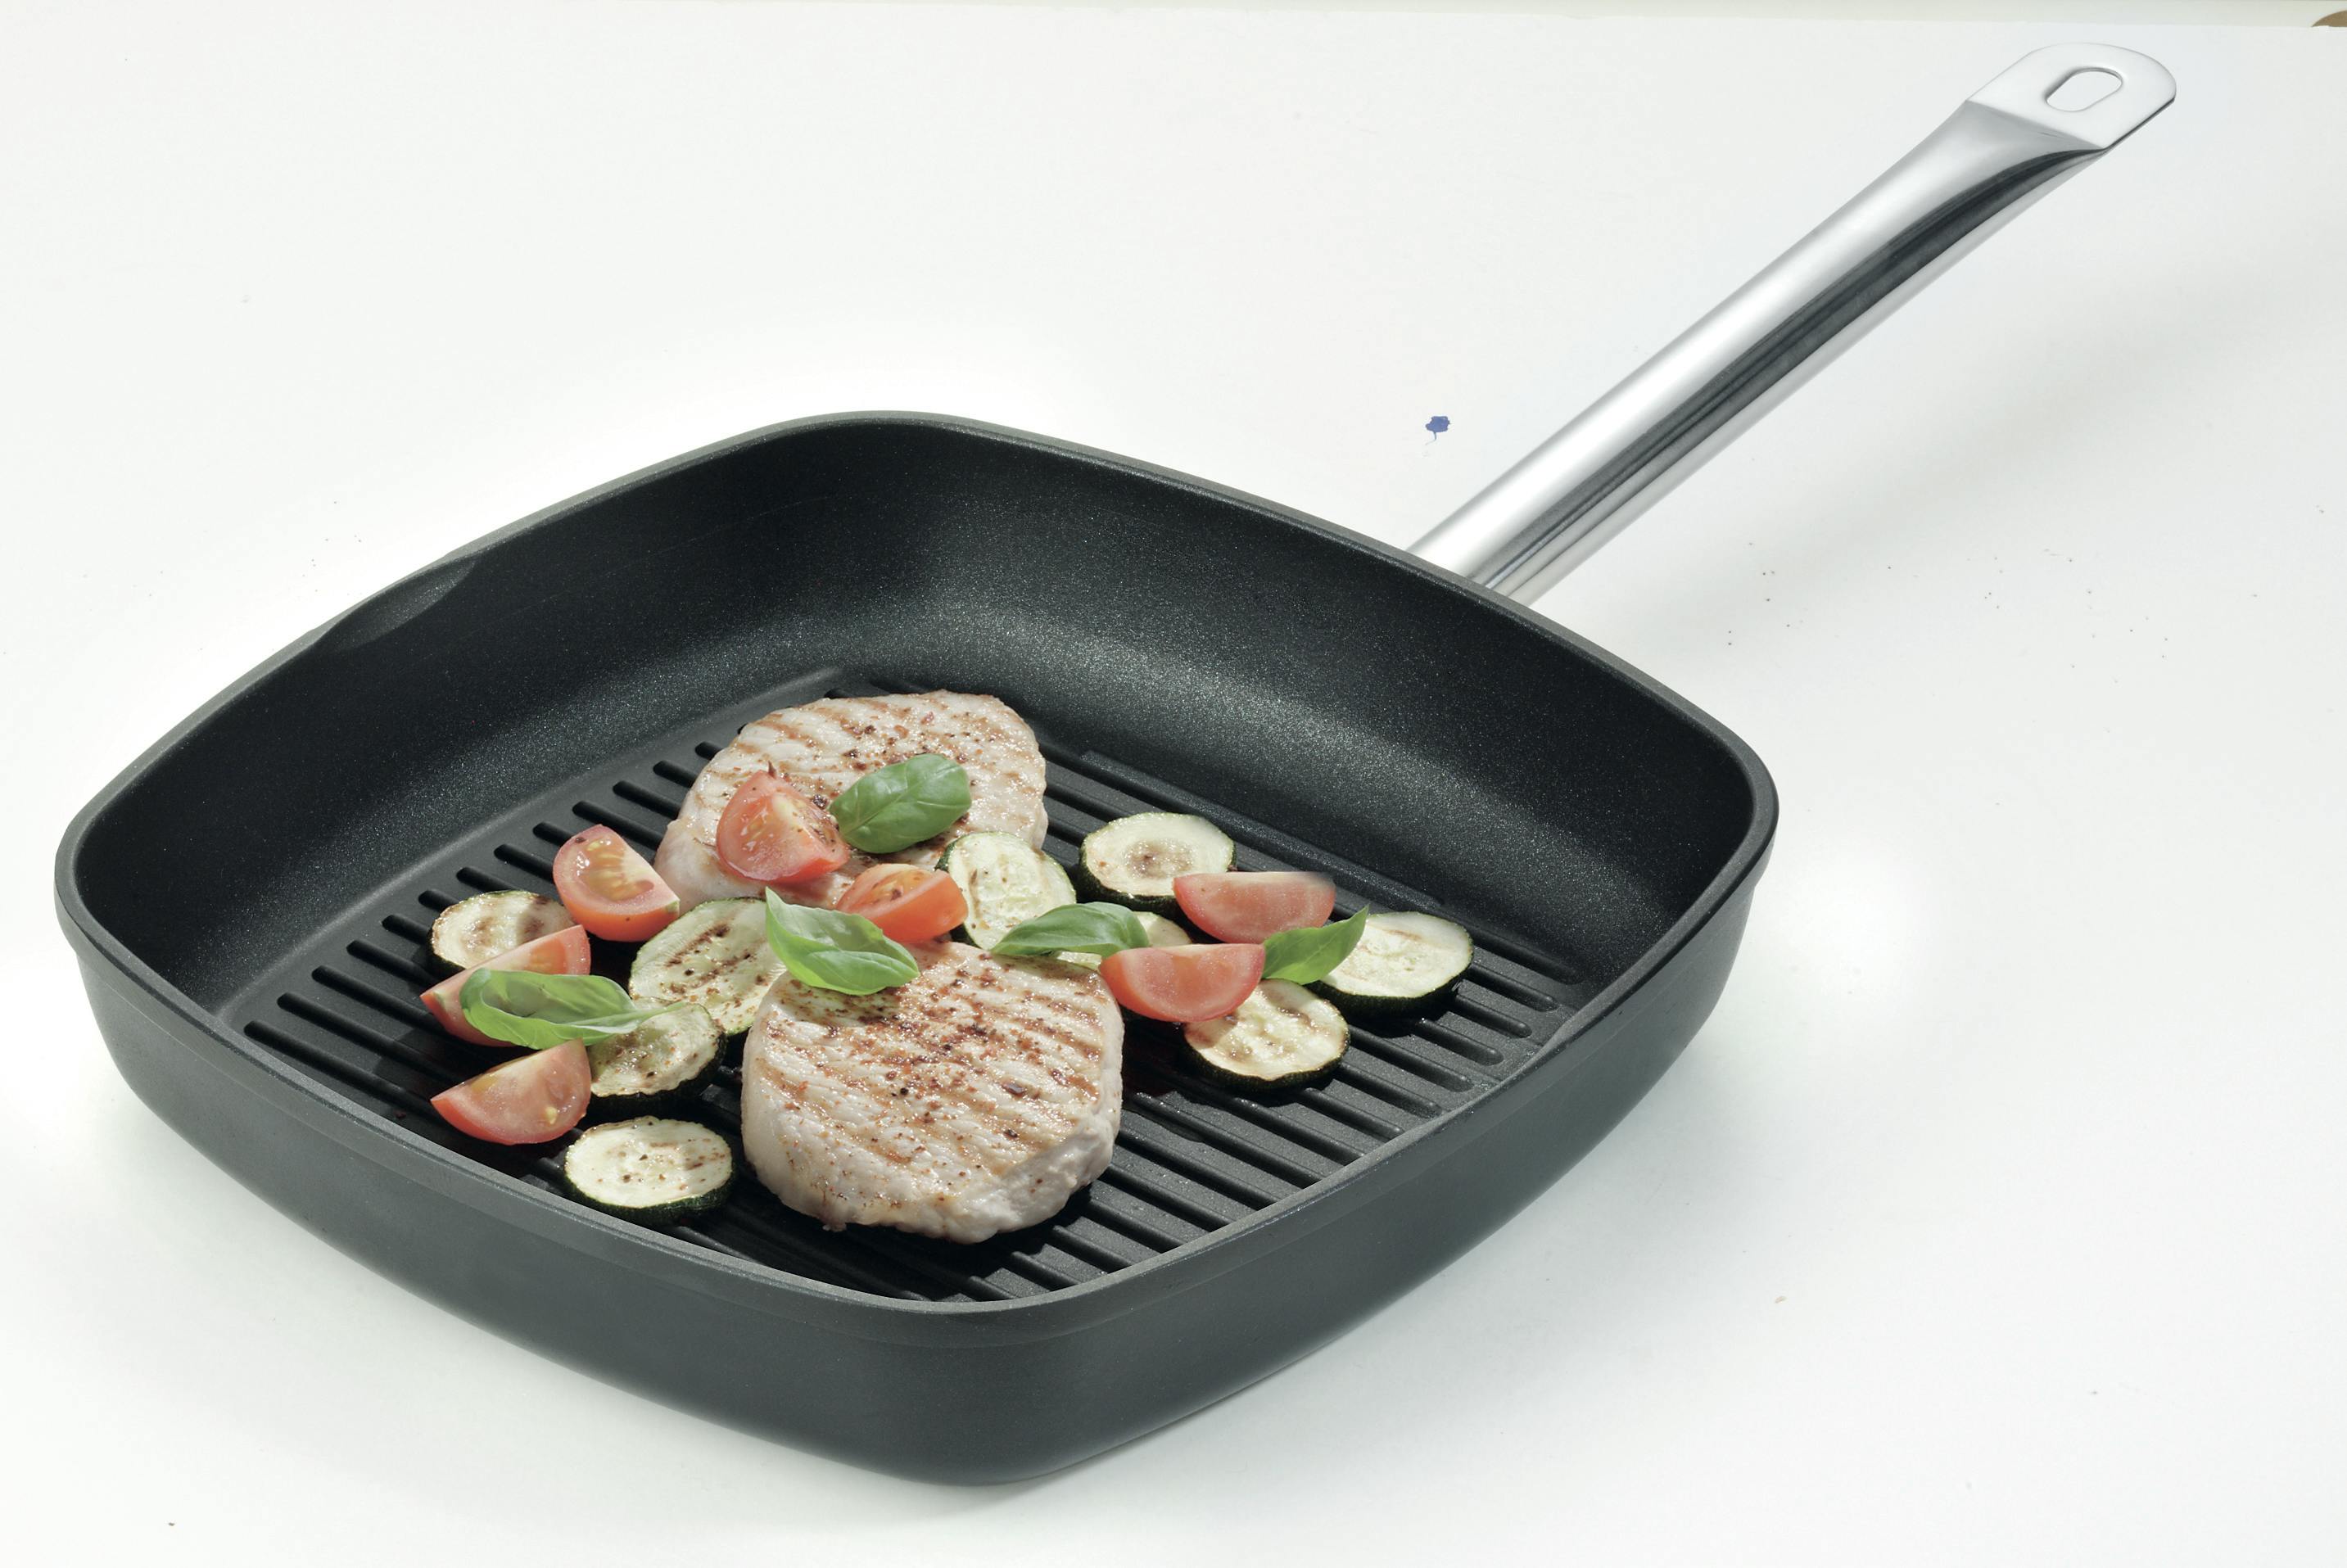 GSW Grillpfanne Gastro traditionell Titanium 28 x 28 x 5,7cm,  induktionsgeeignet, backofengeeignet bis 240°C | METRO Marktplatz